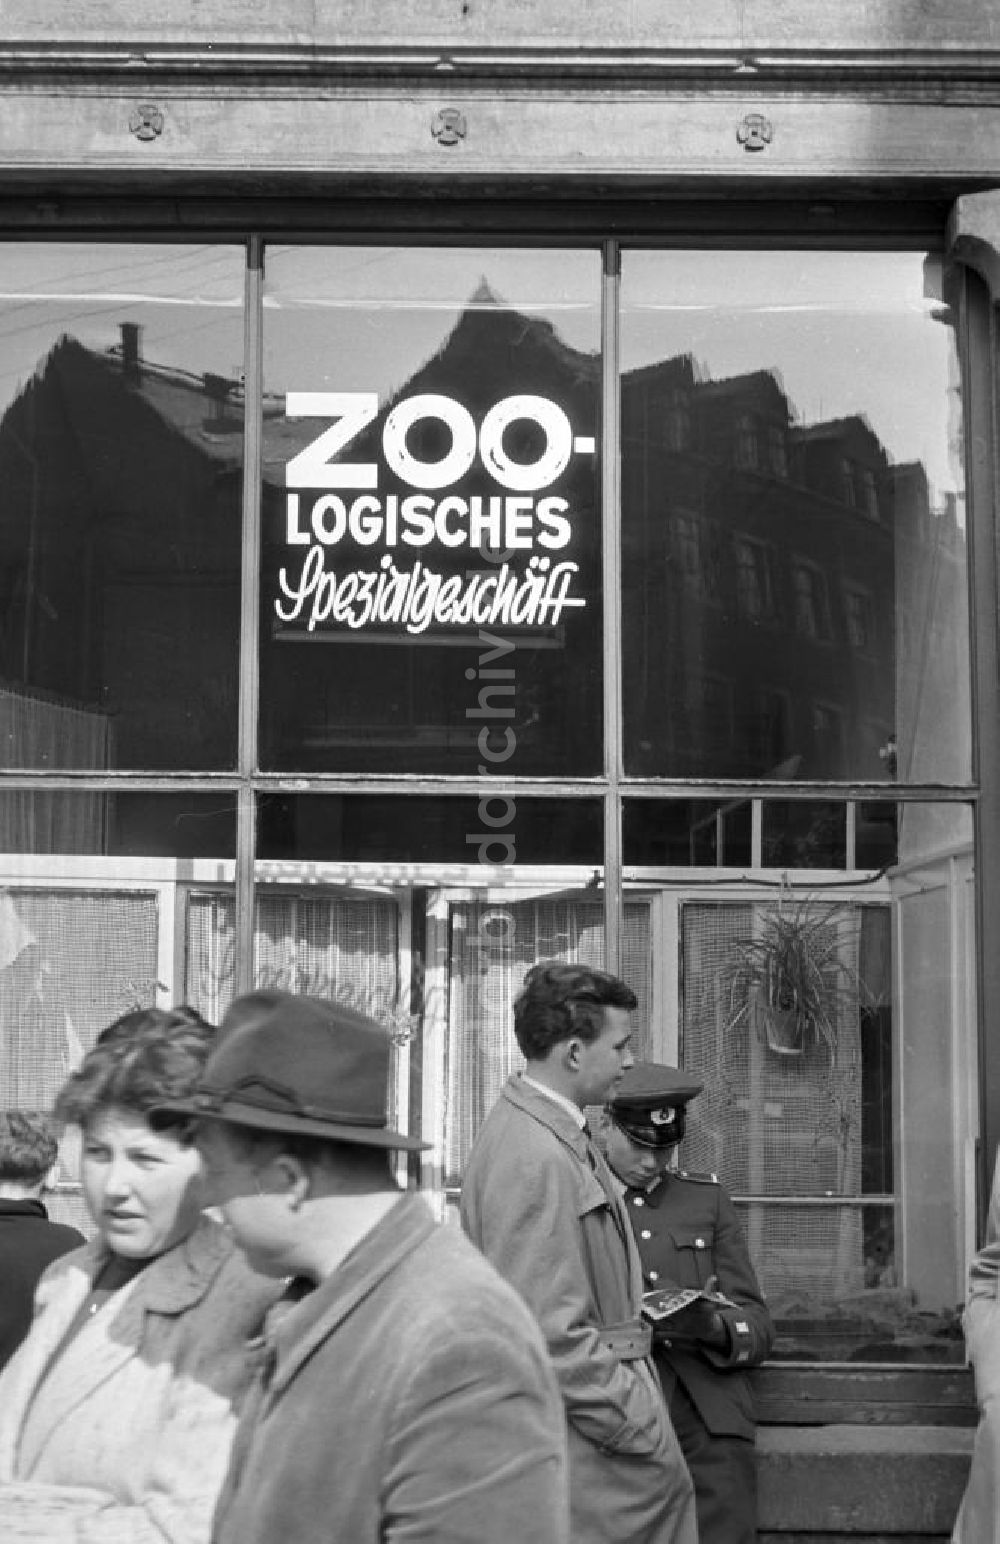 DDR-Fotoarchiv: Meißen - Meißen - Zoologisches Spezialgeschäft 1960